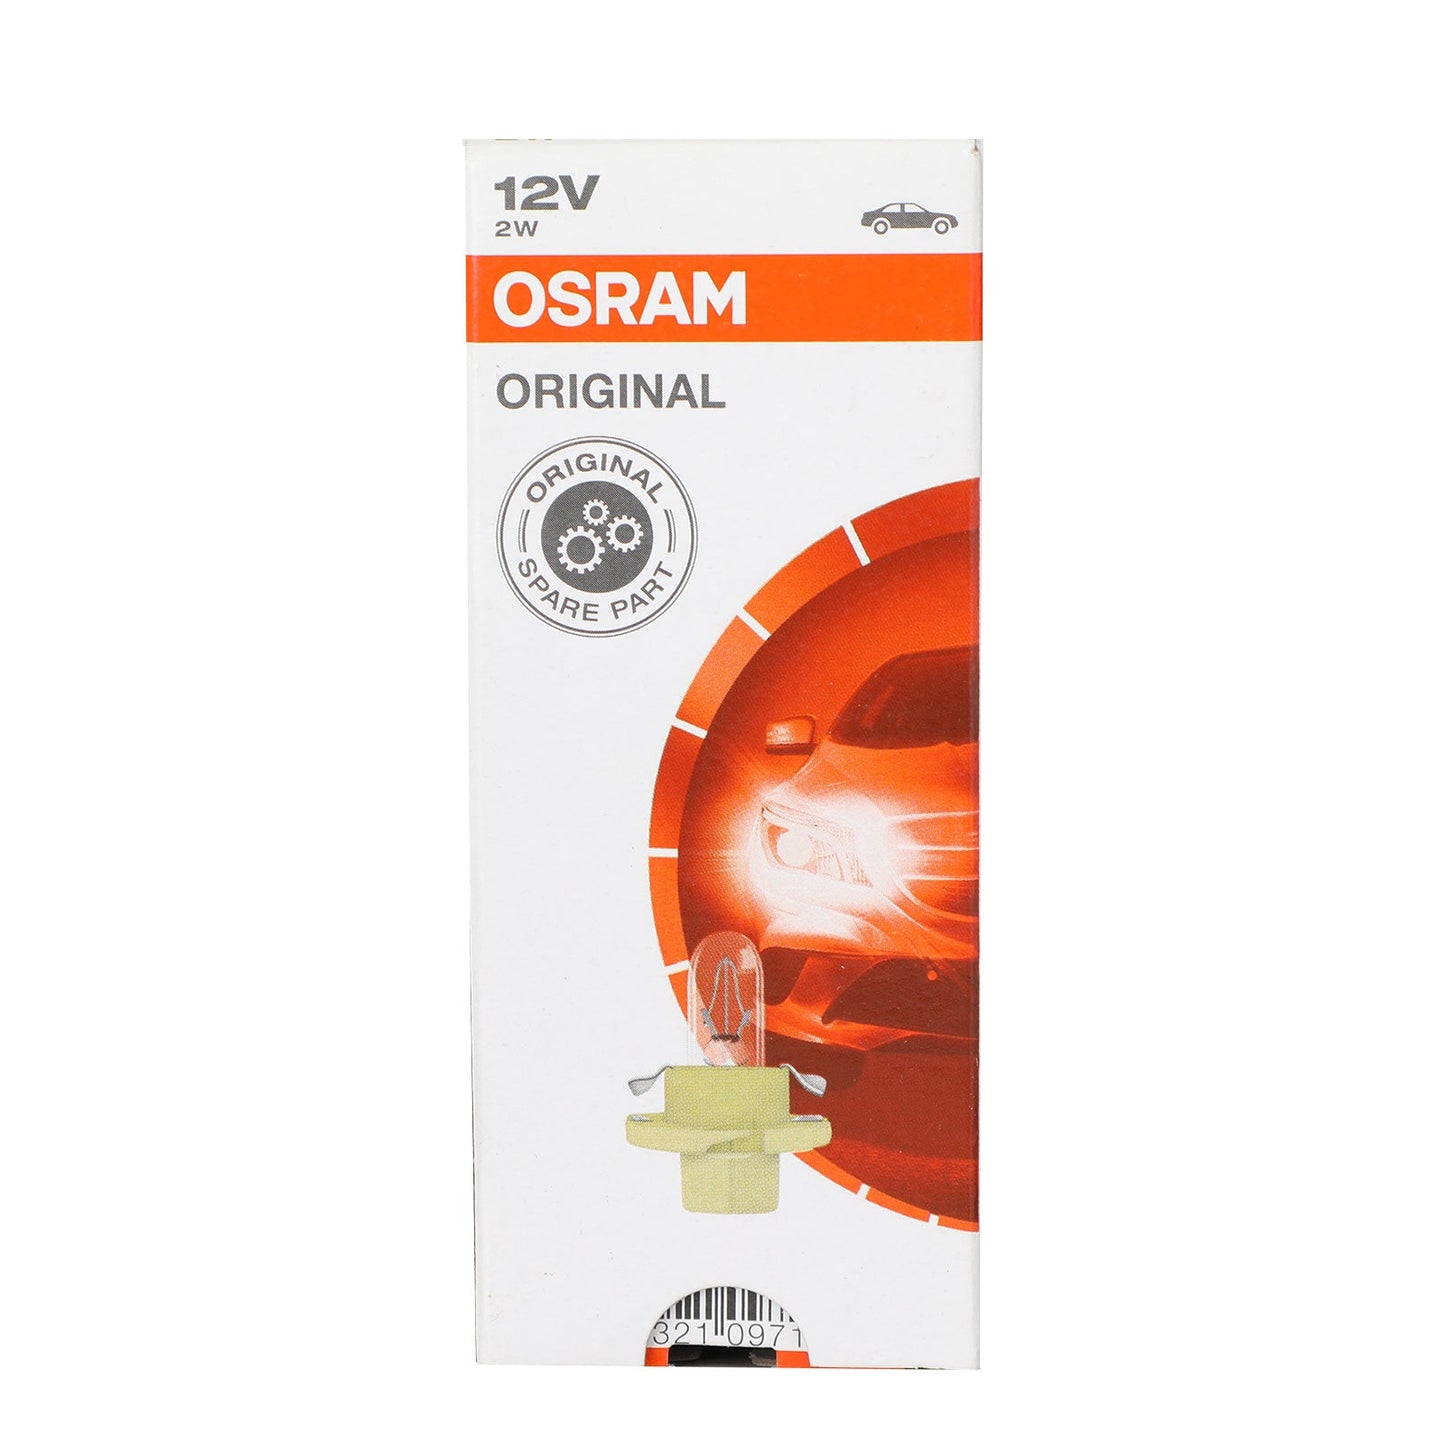 10x For OSRAM Car Original Instrument Lights 2352MFX6 12V 2W BX8.4d